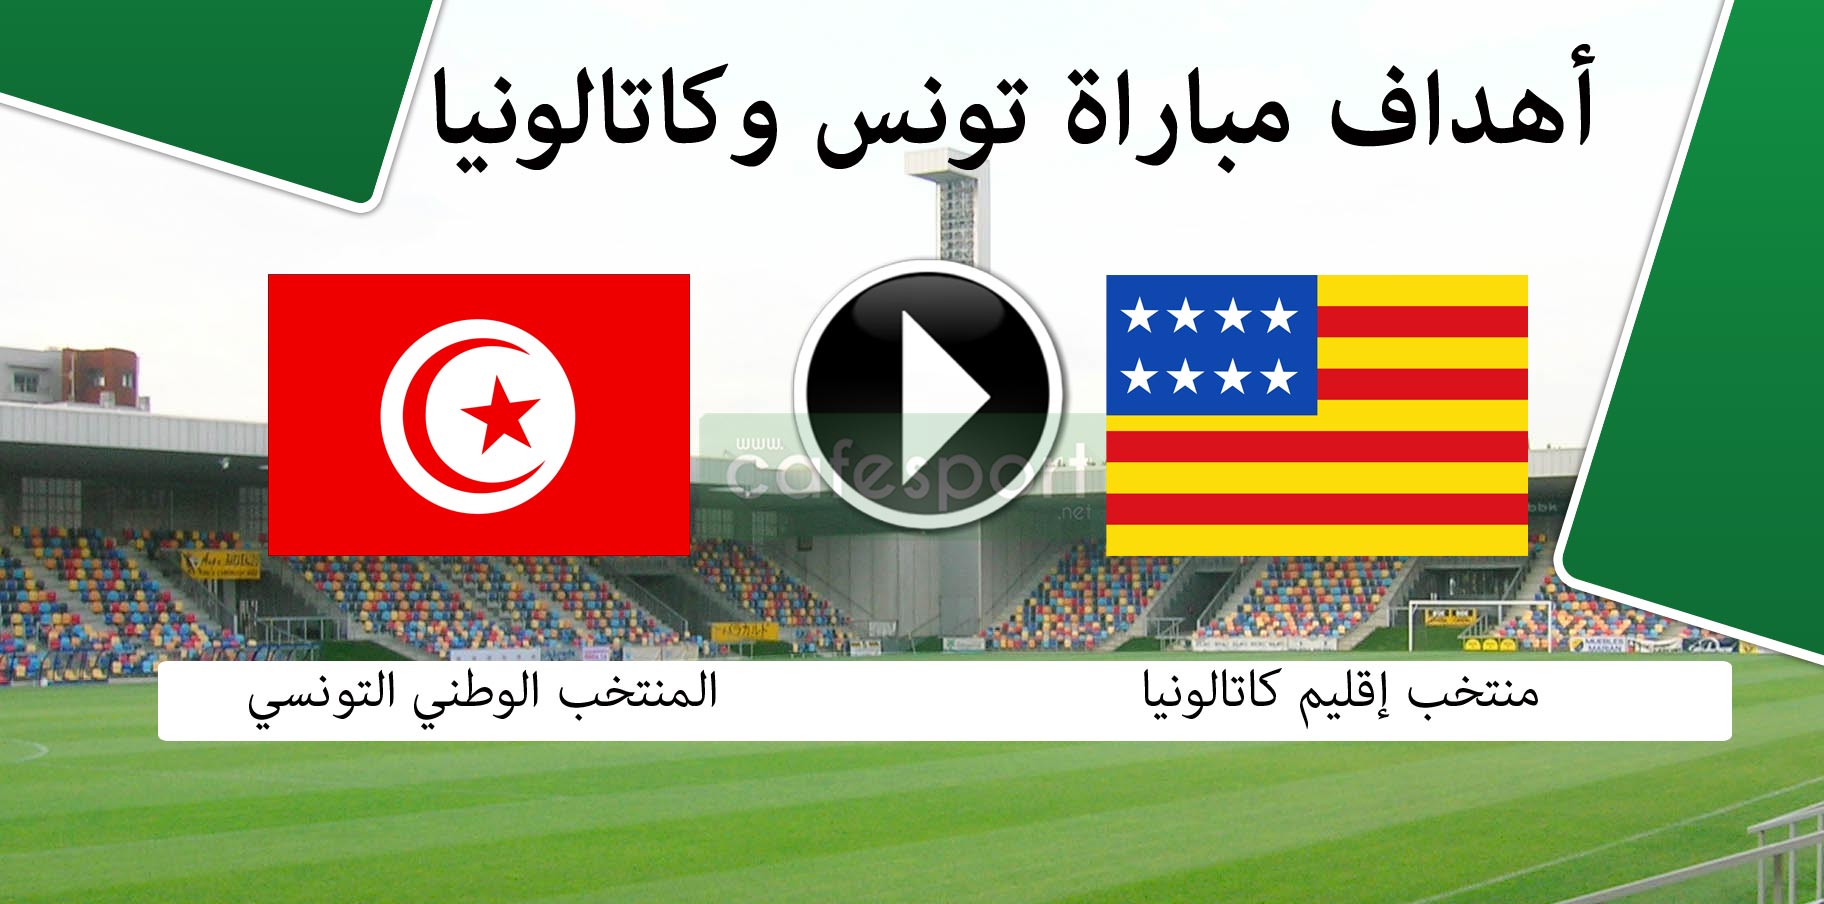 أهداف مباراة تونس وكاتالونيا